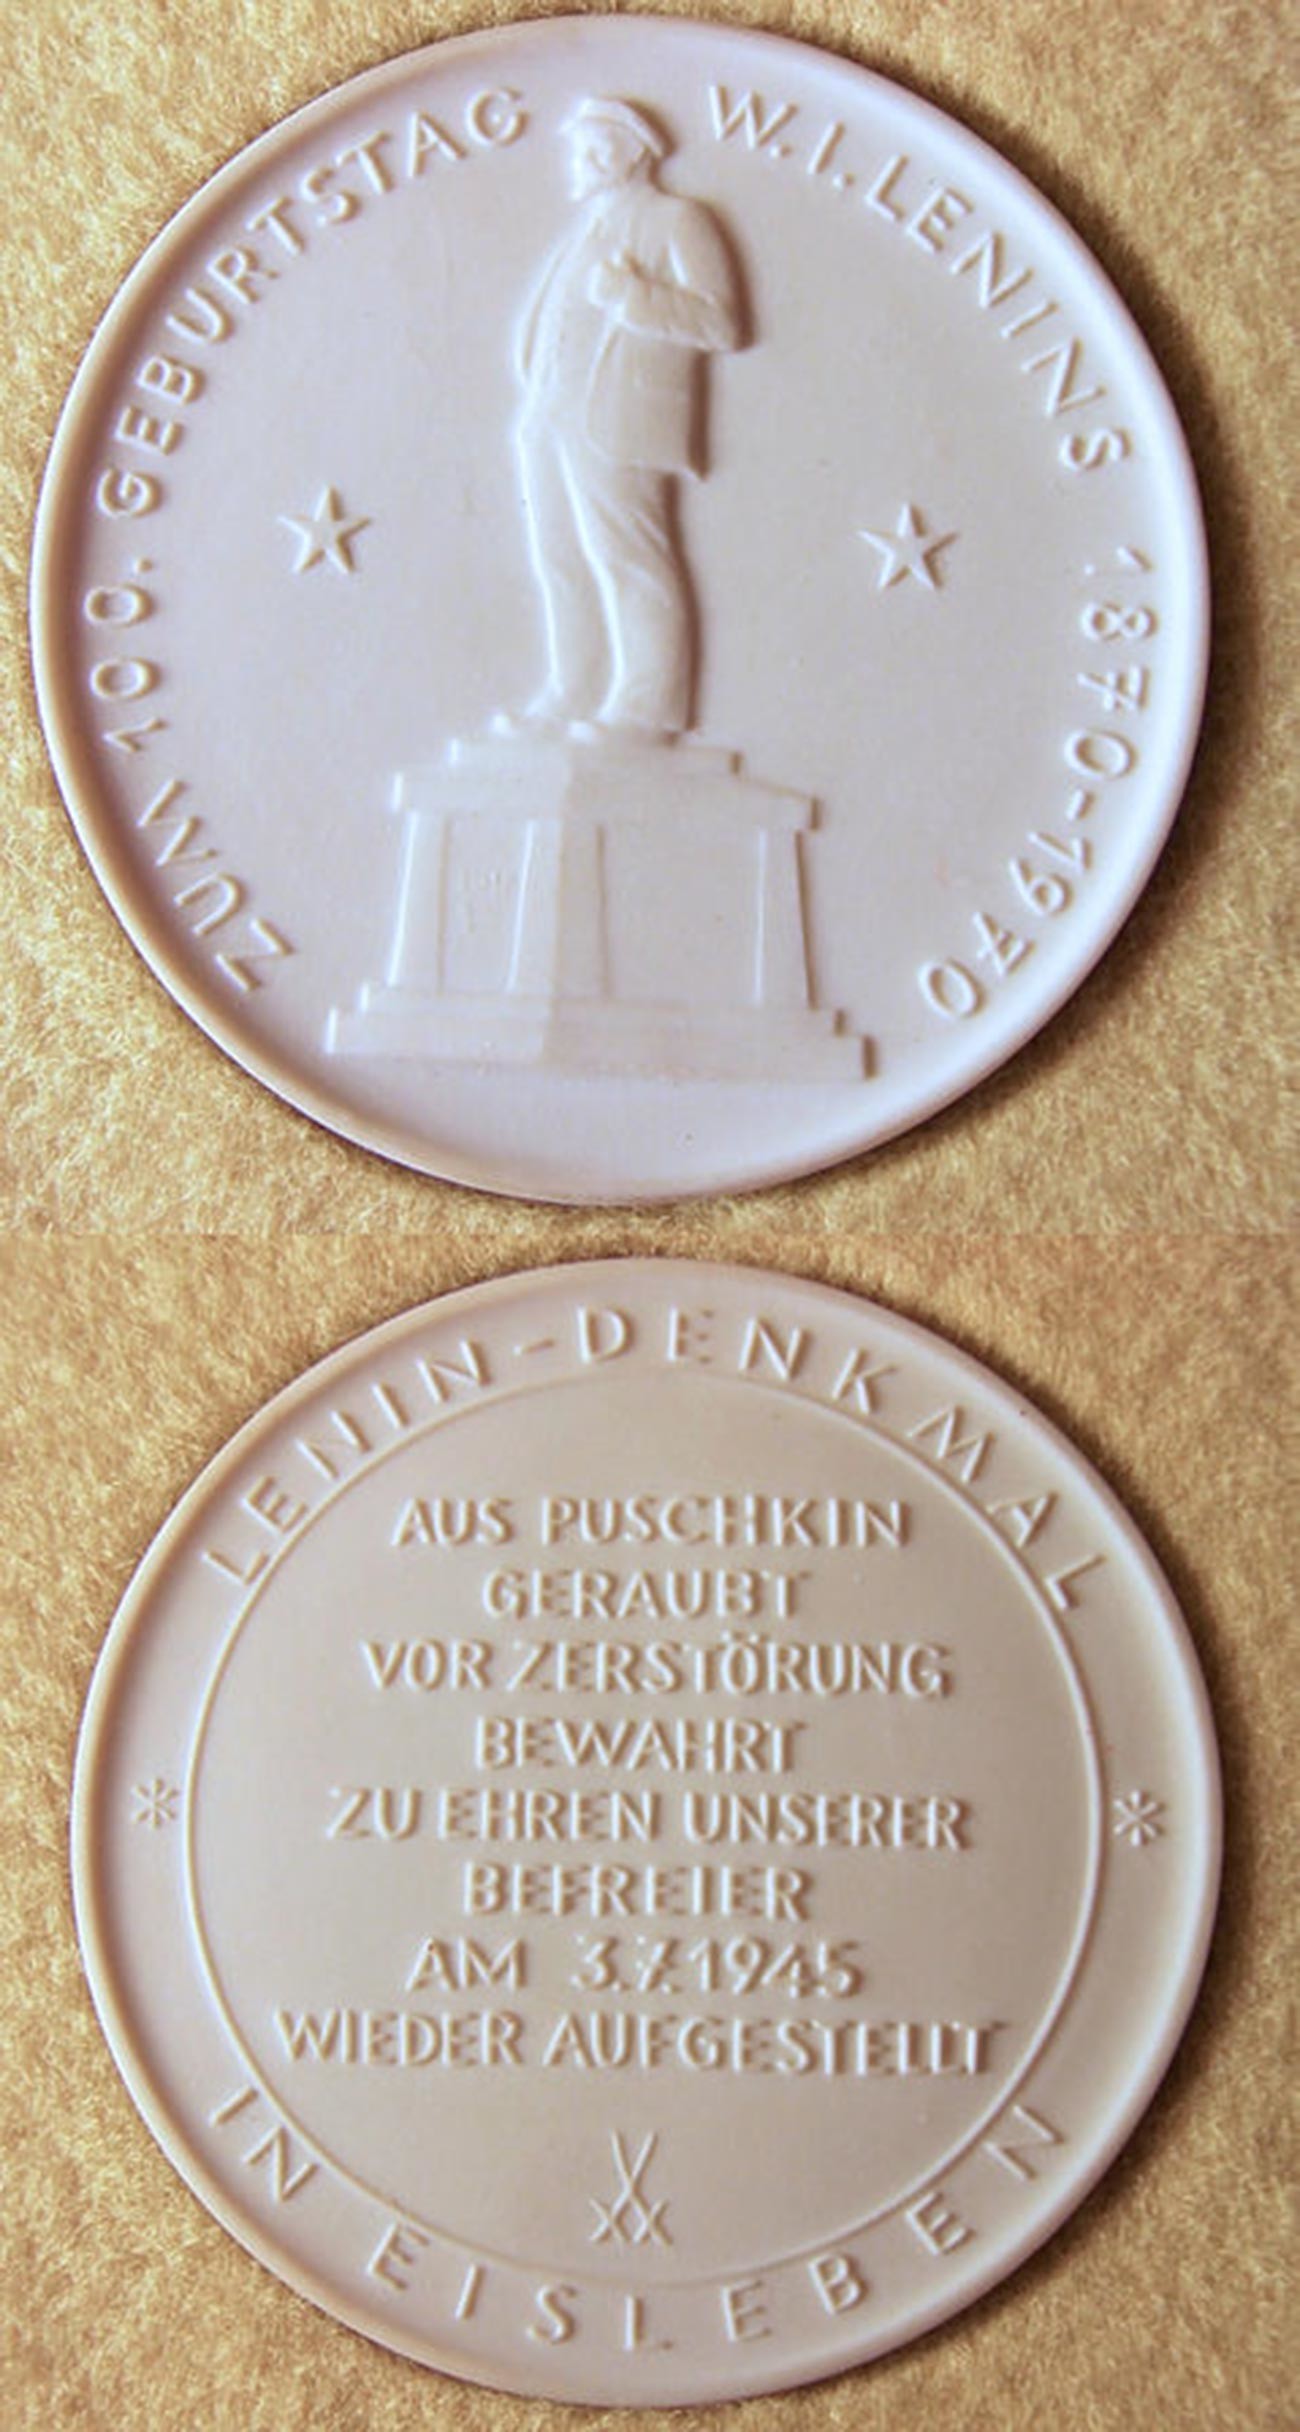 Spominska medalja (1970) iz meissenskega porcelana ob 100. obletnici Leninovega rojstva s podobo Leninovega spomenika v Eislebnu